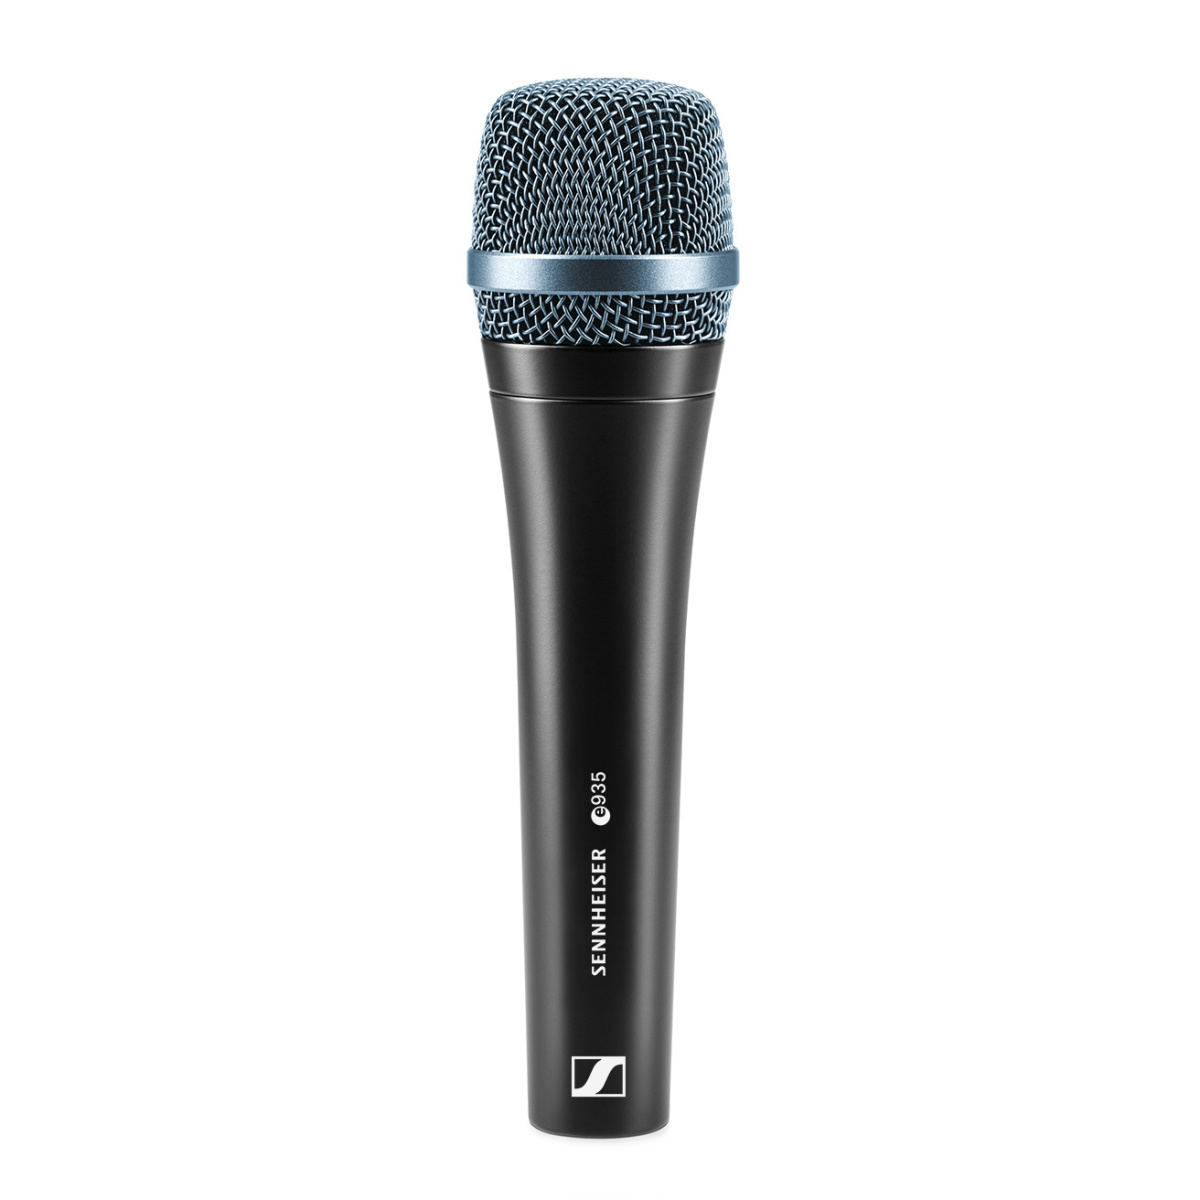 SENNHEISER E 935 - динамический вокальный микрофон, кардиоида, 40 - 18000 Гц, 350 Ом